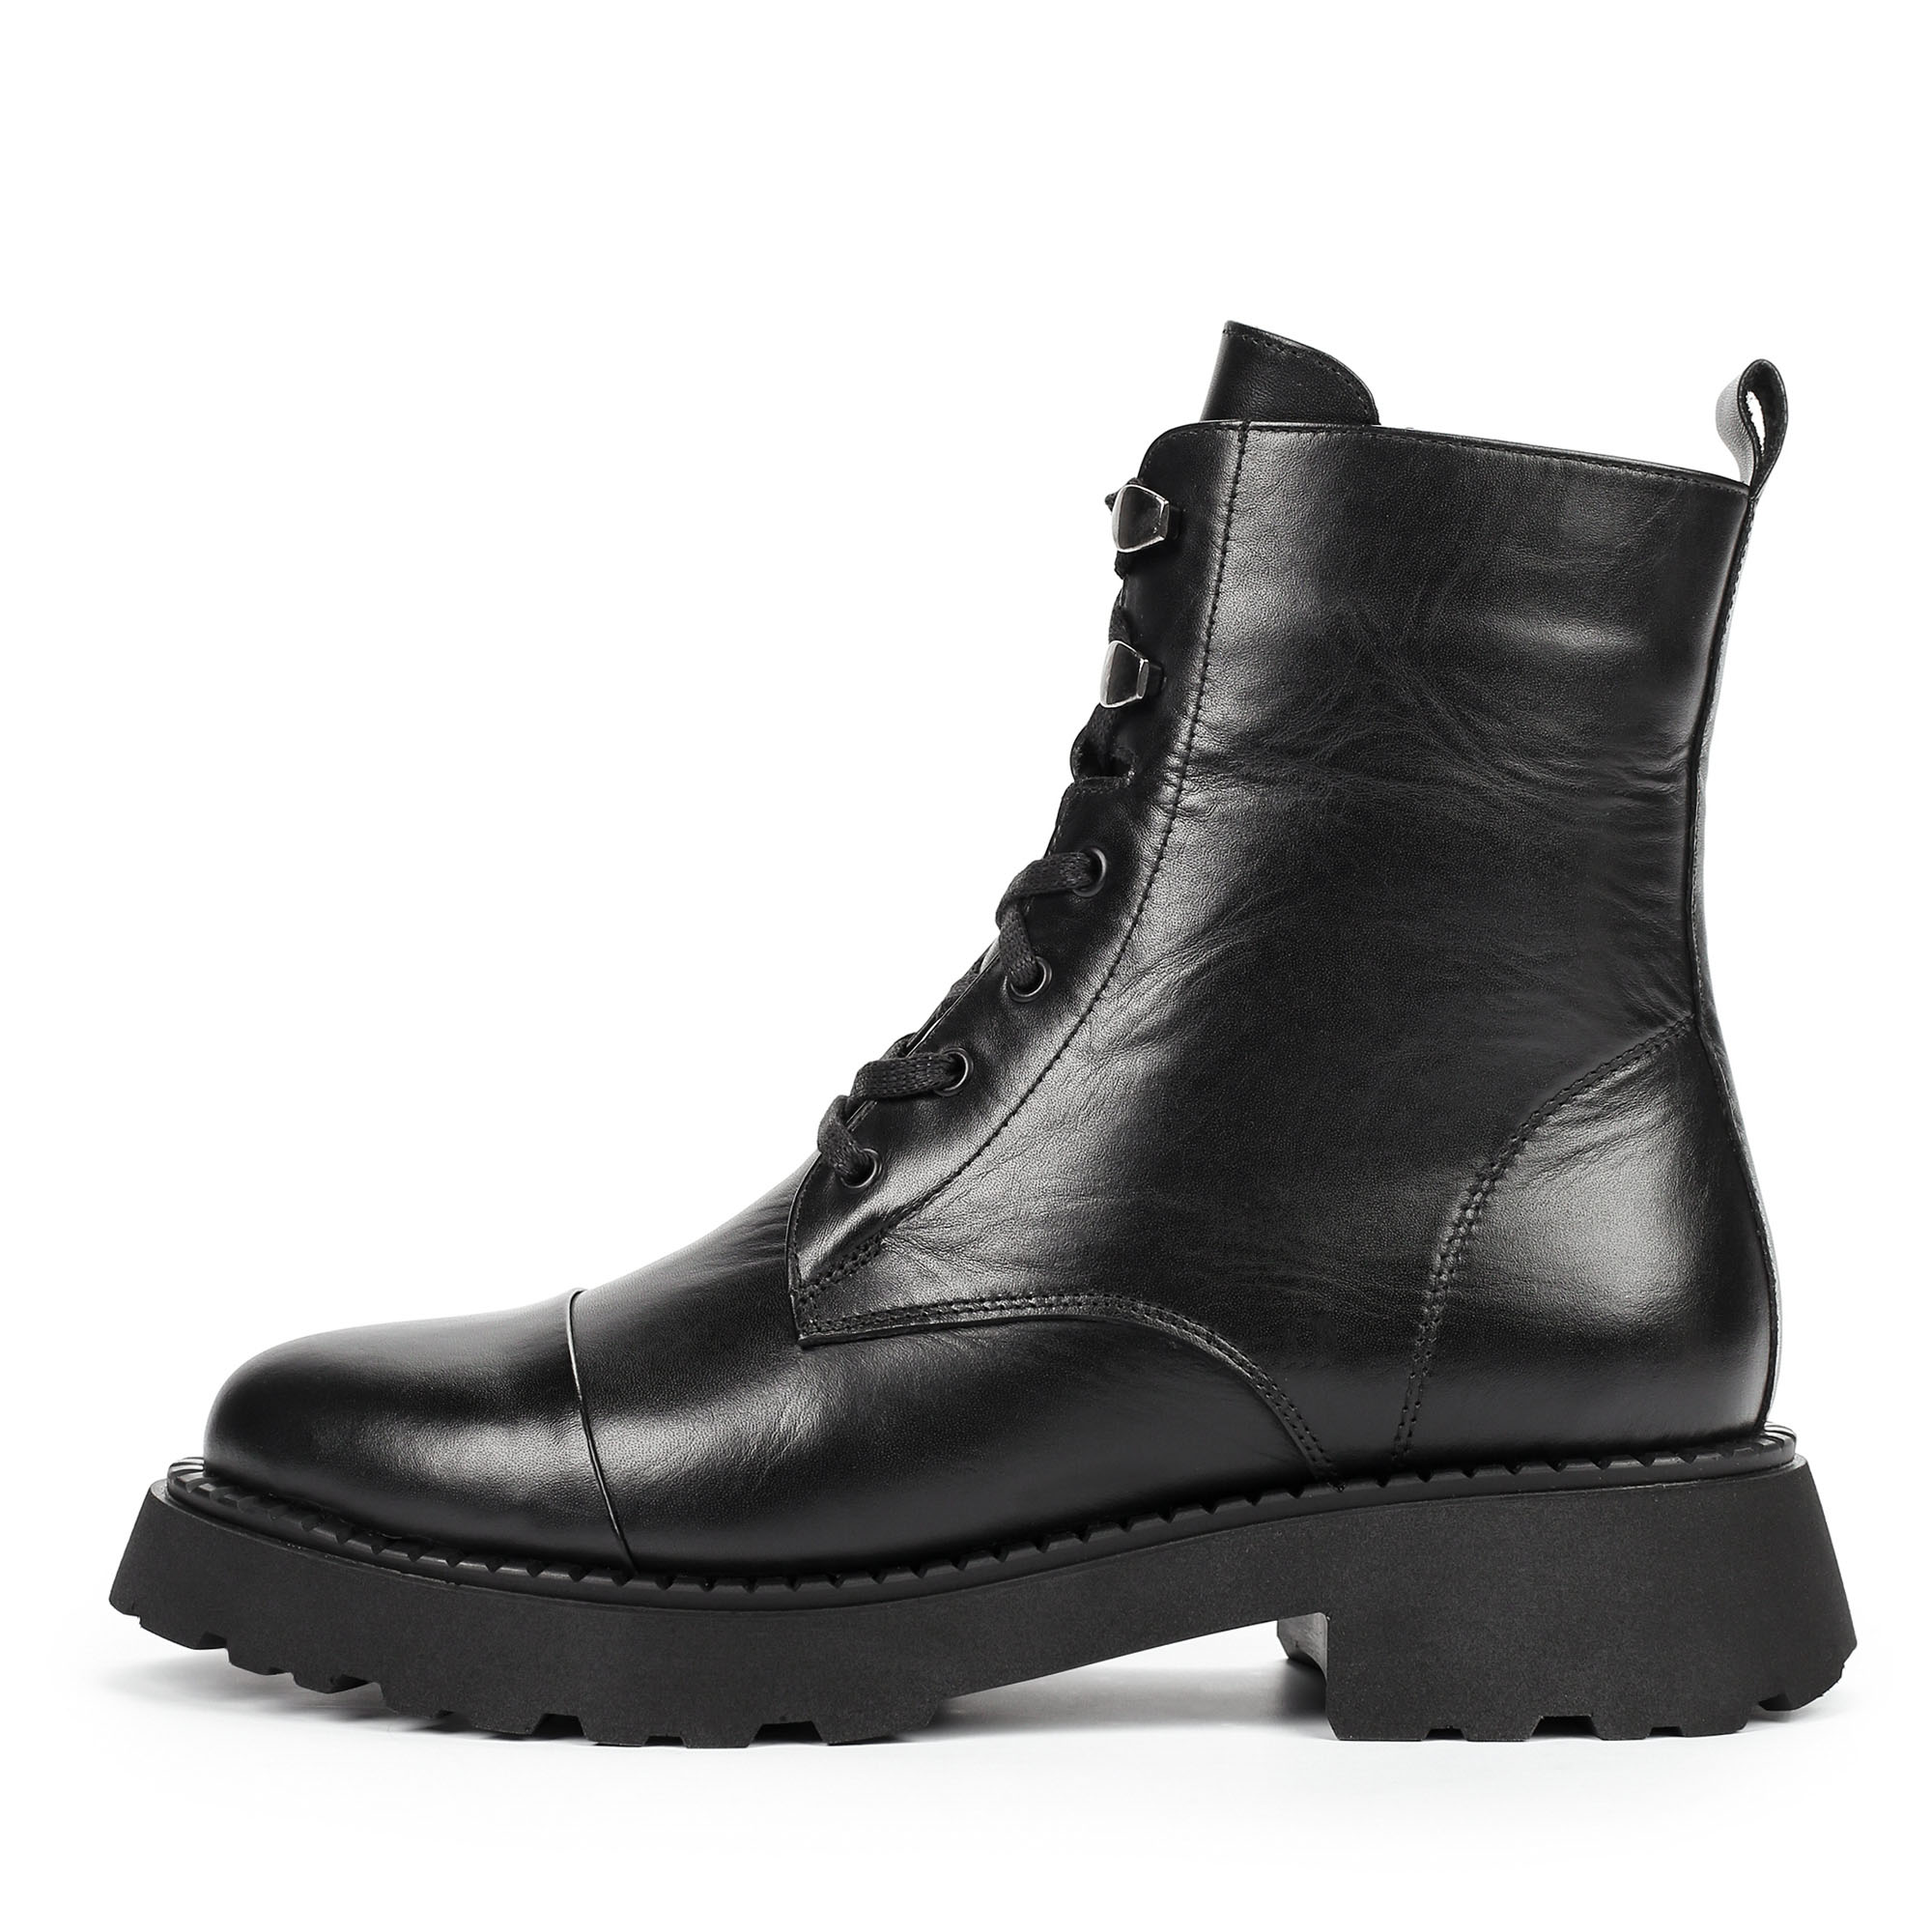 Ботинки Thomas Munz 506-182A-2102, цвет черный, размер 38